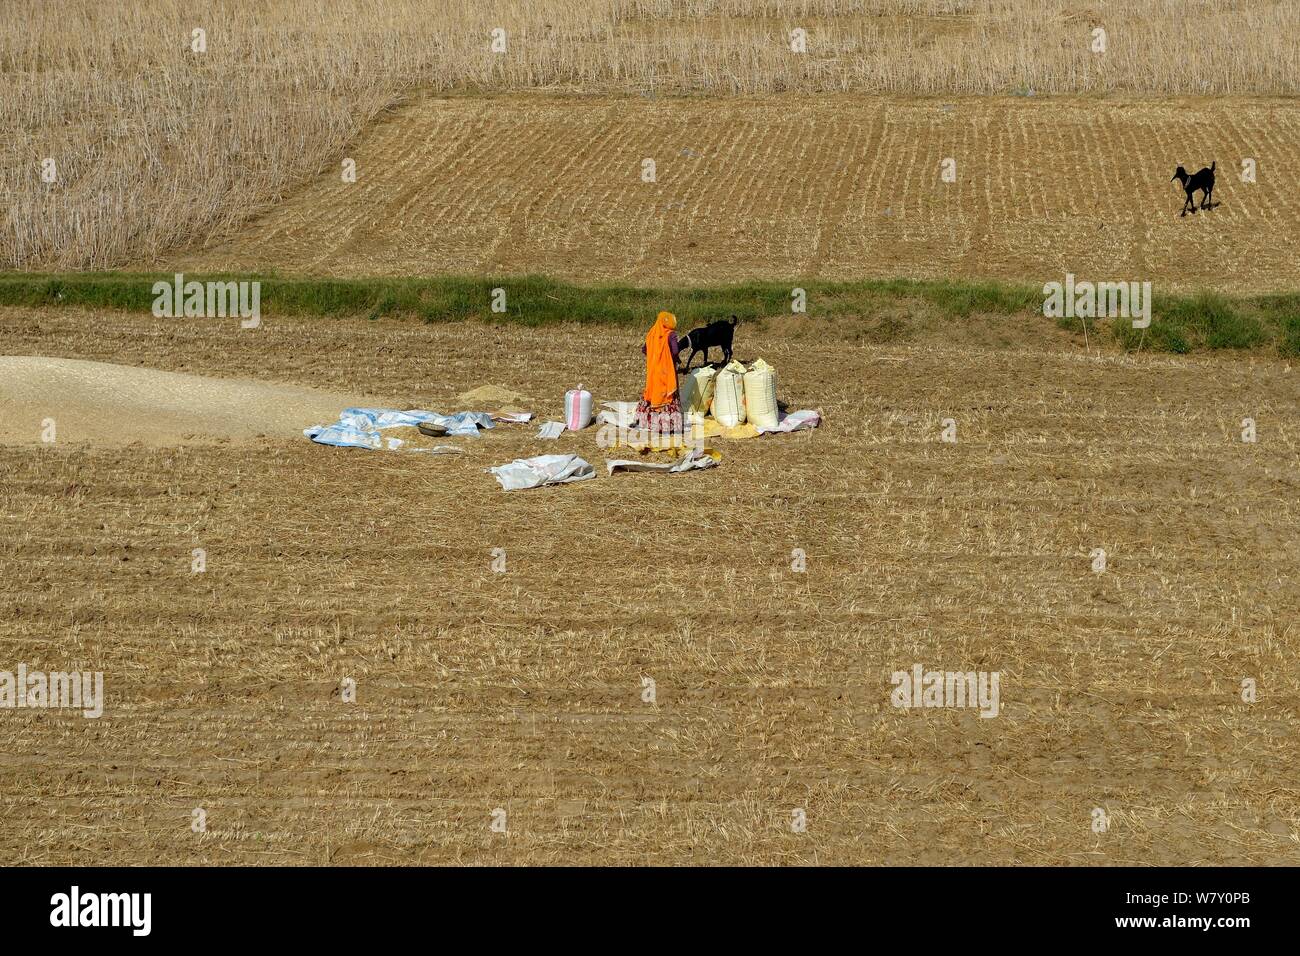 Frau und Ziegen im stoppel Feld mit Säcken Getreide während der Ernte, Indien, März 2014. Stockfoto